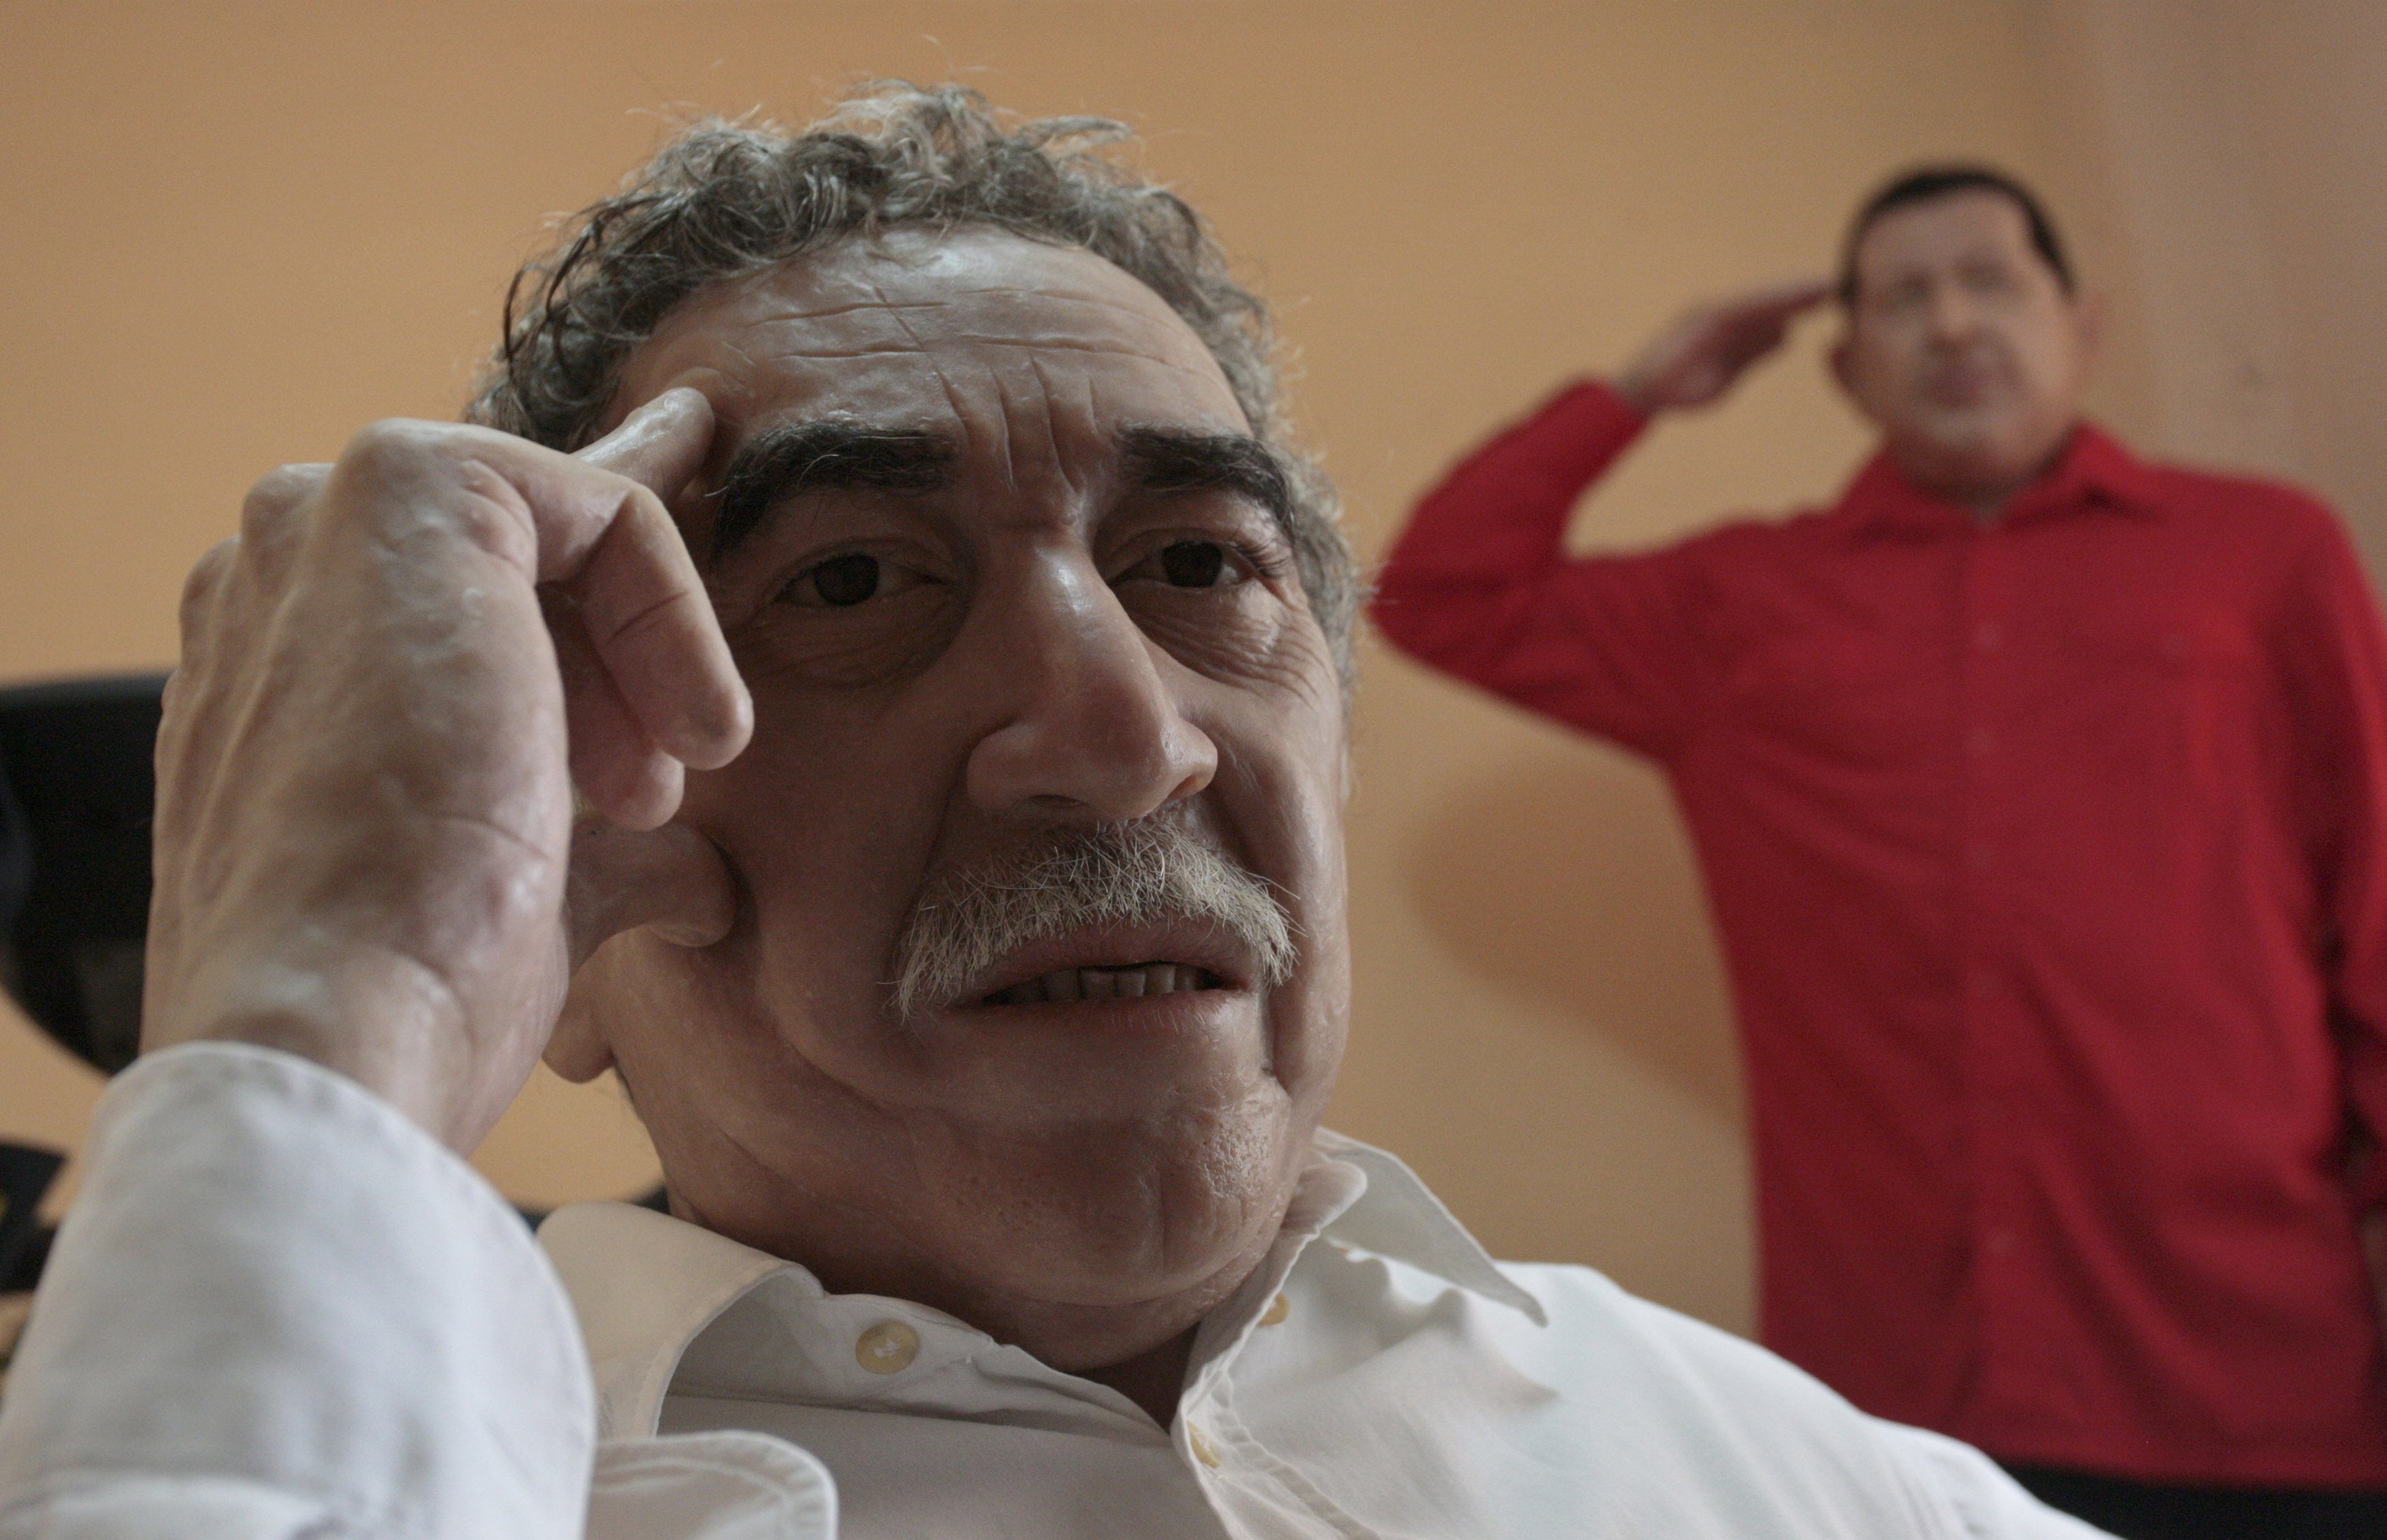 Chávez y Gabriel García Márquez juntos en el Museo de Cera de Cuba (Fotos)